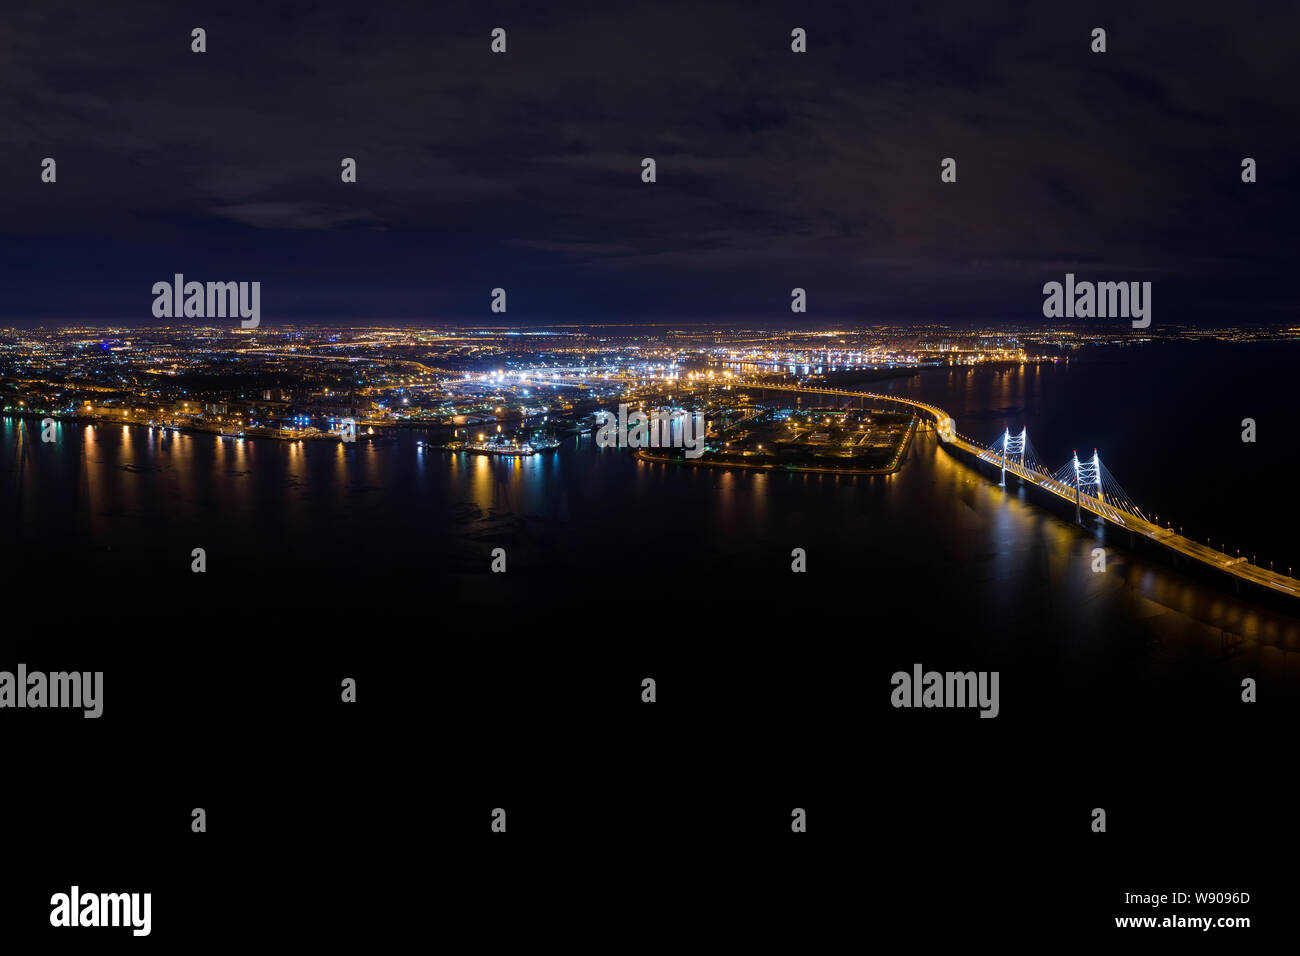 Panorama de Saint Petersburg, Russie la nuit. Autoroute surélevée au-dessus de la mer, pont, port de mer et ville loin lumières nuit vue aérienne Banque D'Images